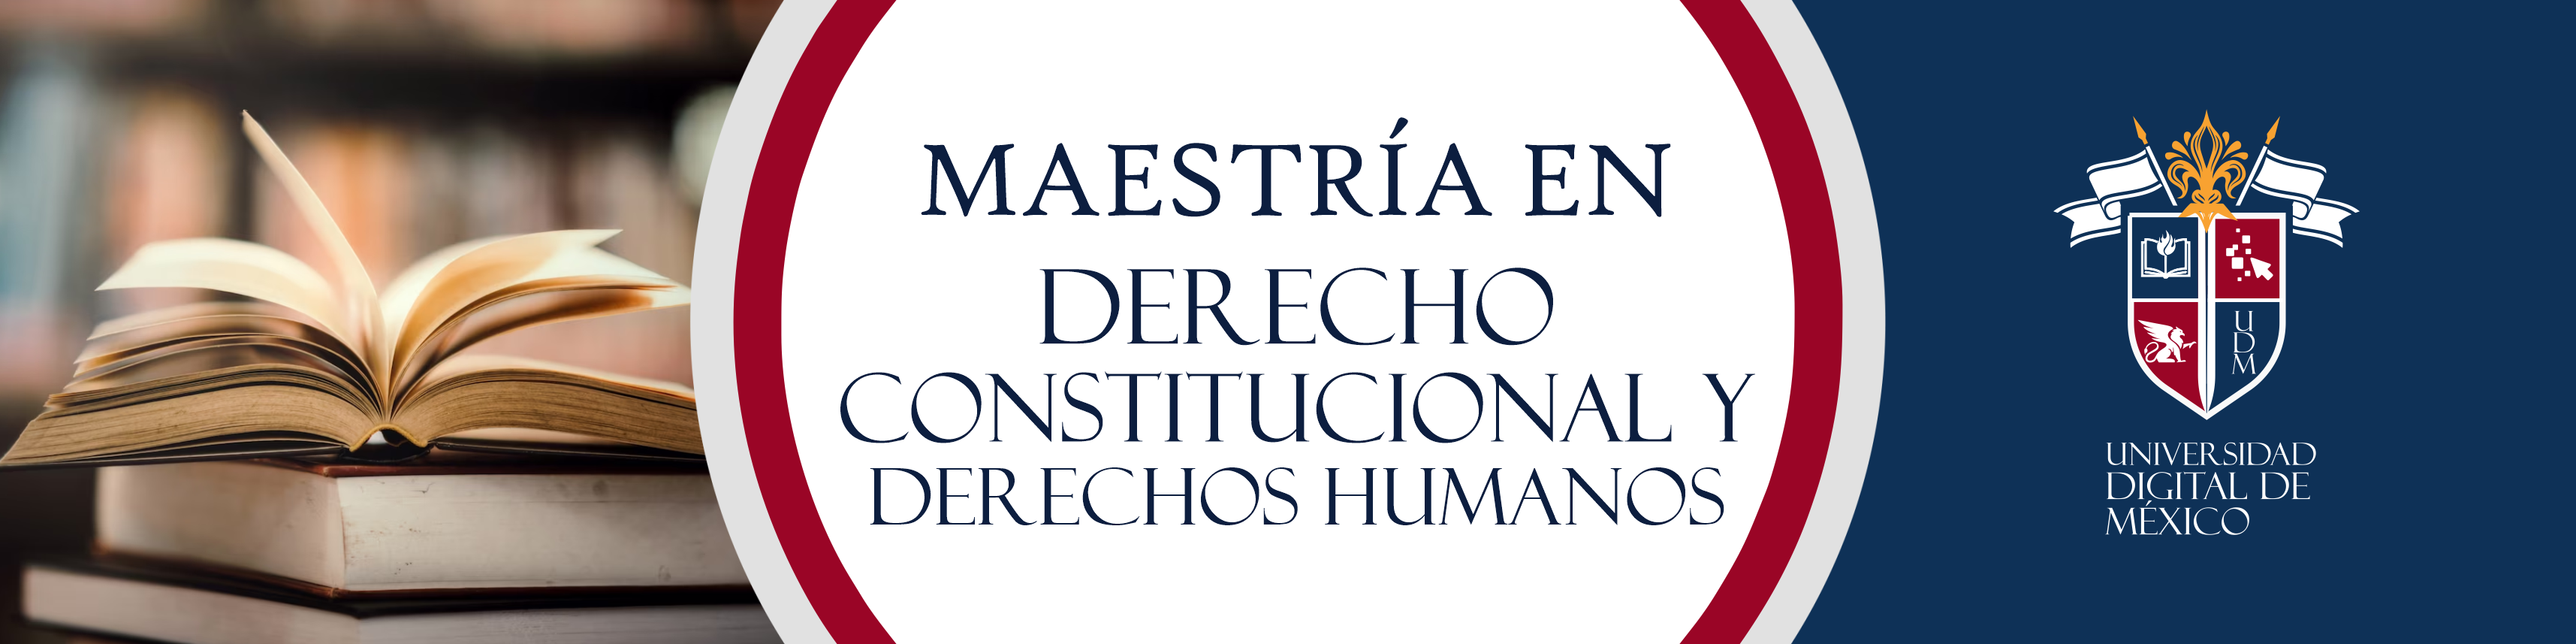 Maestría en Derecho Constitucional y Derechos Humanos.